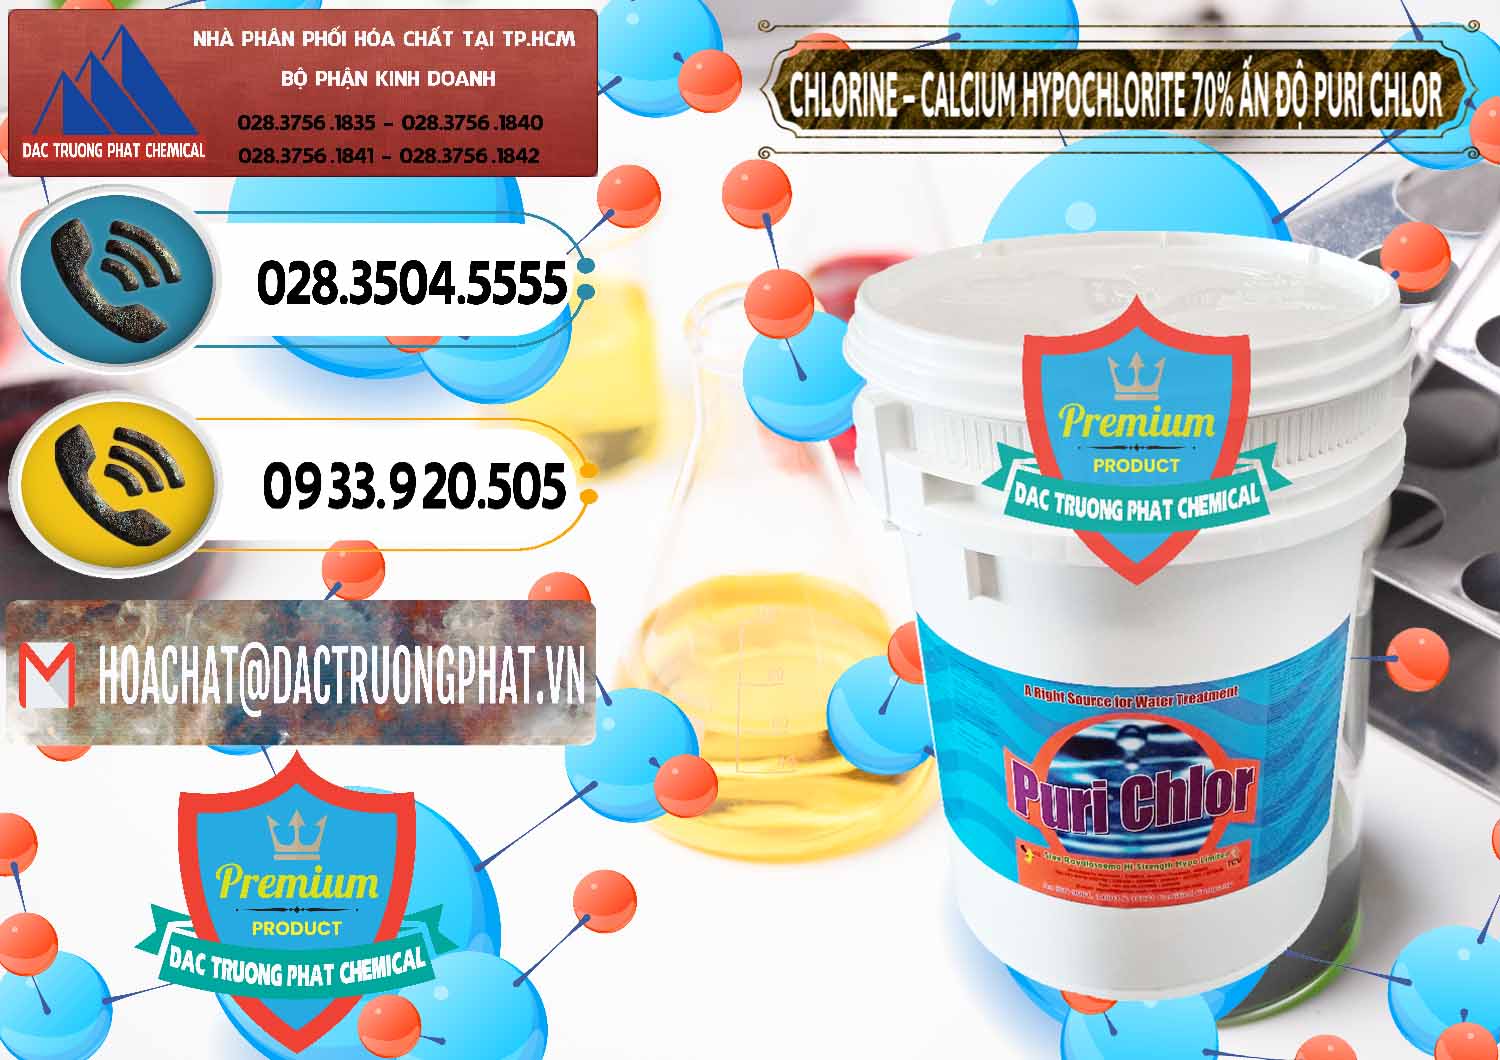 Công ty bán - phân phối Chlorine – Clorin 70% Puri Chlo Ấn Độ India - 0123 - Đơn vị chuyên nhập khẩu _ phân phối hóa chất tại TP.HCM - hoachatdetnhuom.vn